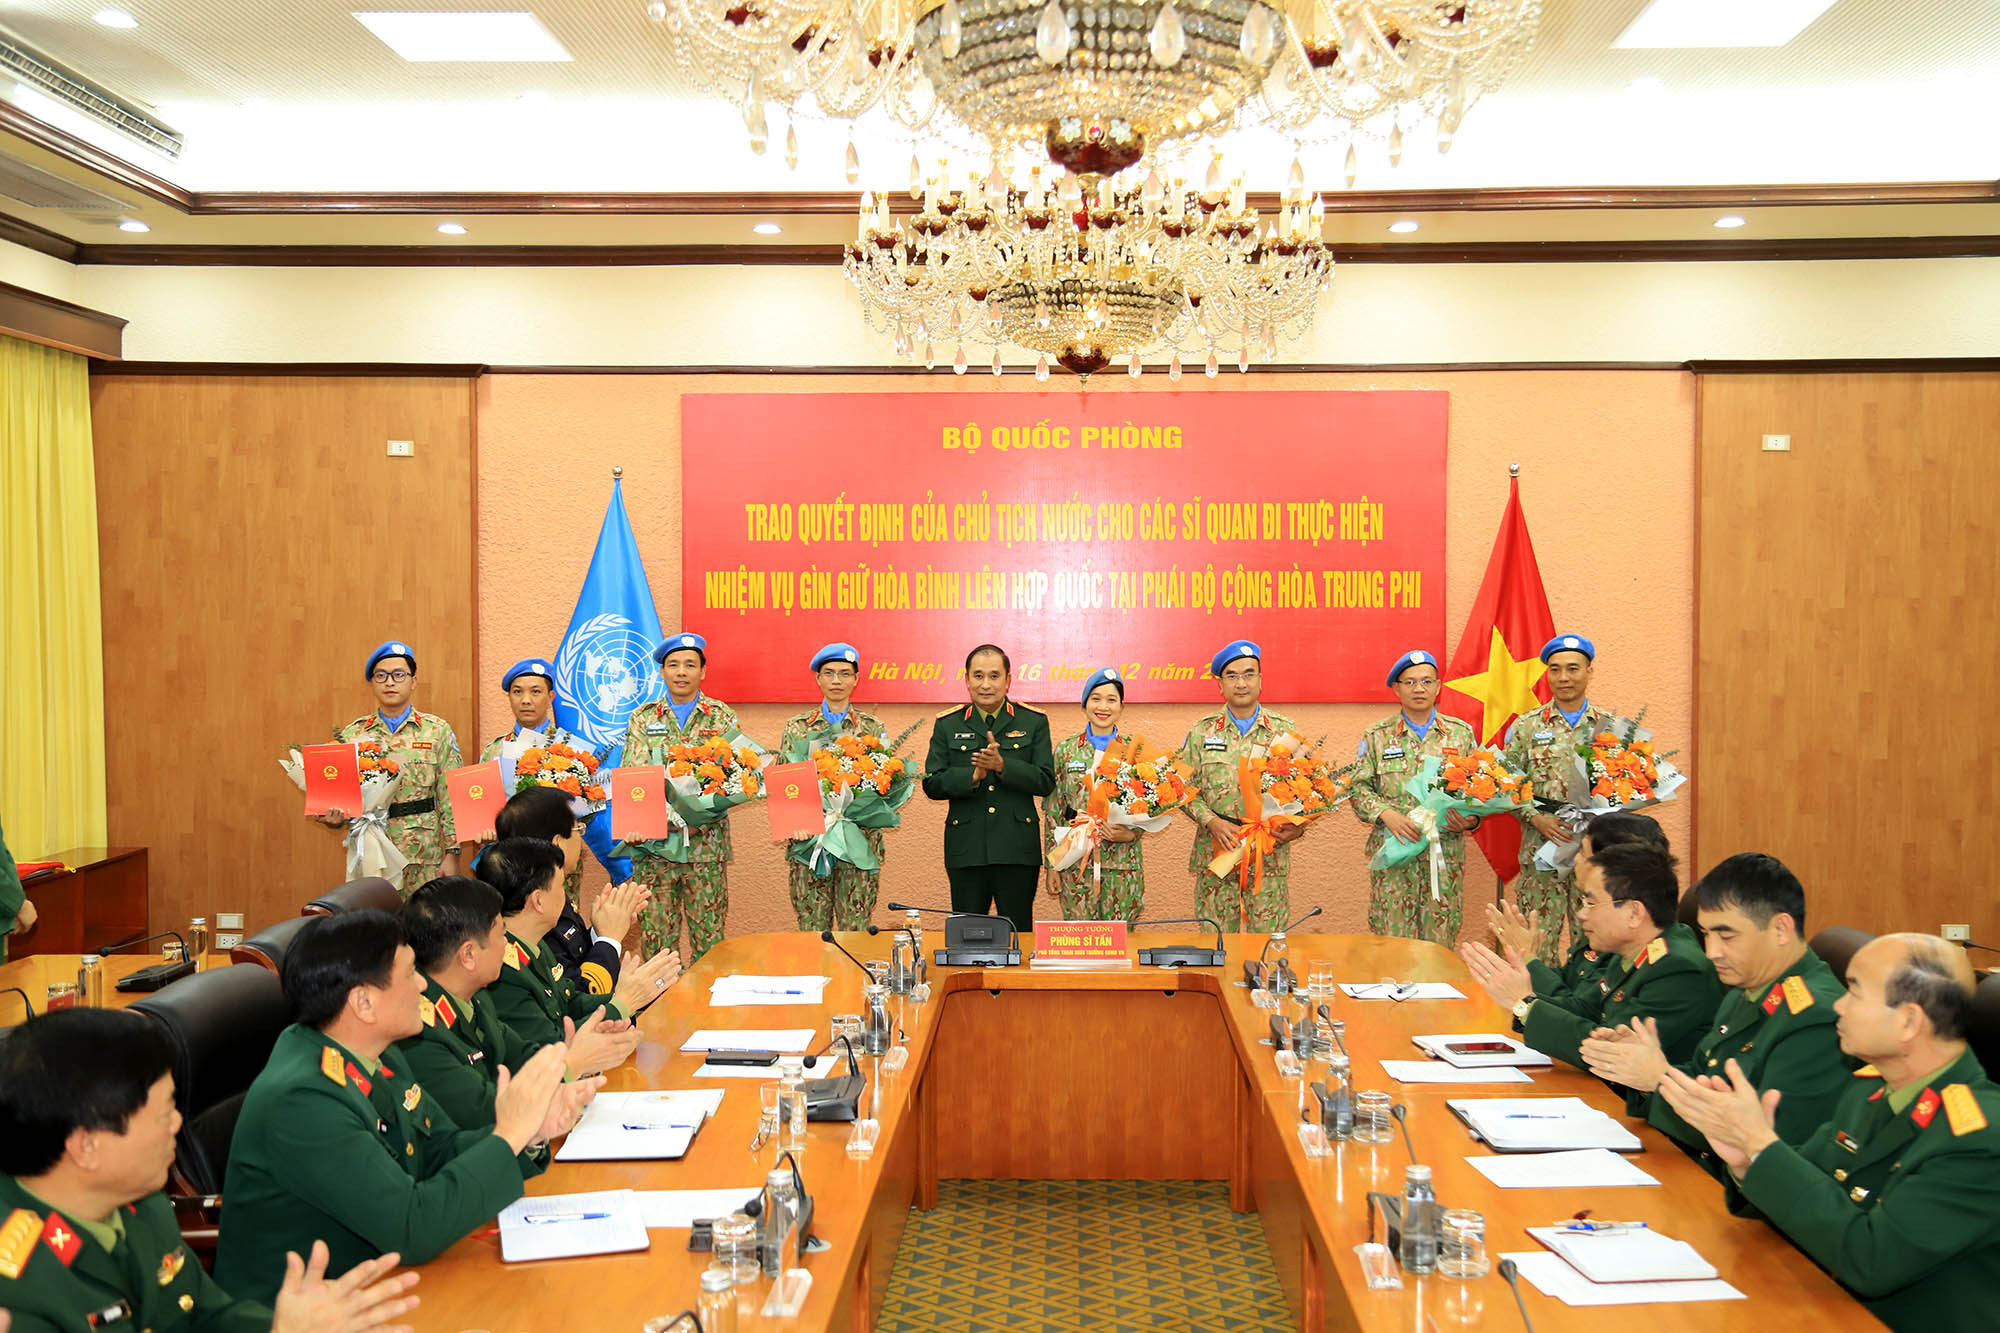 Trao quyết định của Chủ tịch nước cho 4 sĩ quan đi gìn giữ hòa bình Liên Hiệp Quốc